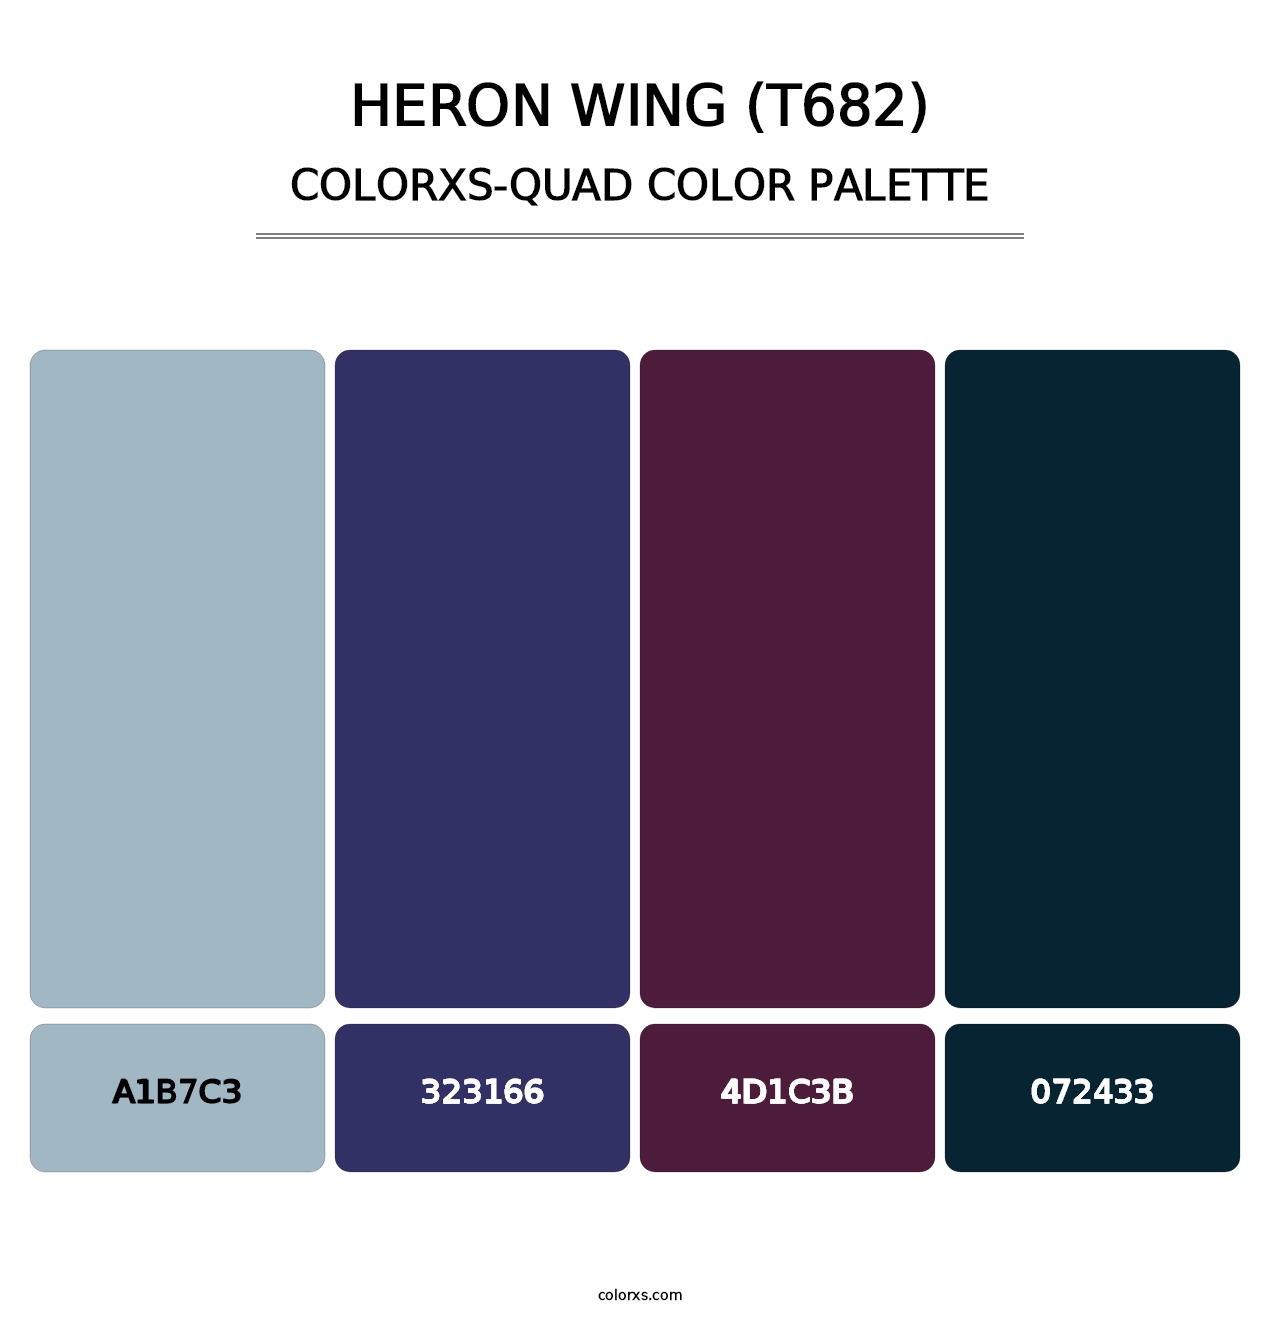 Heron Wing (T682) - Colorxs Quad Palette